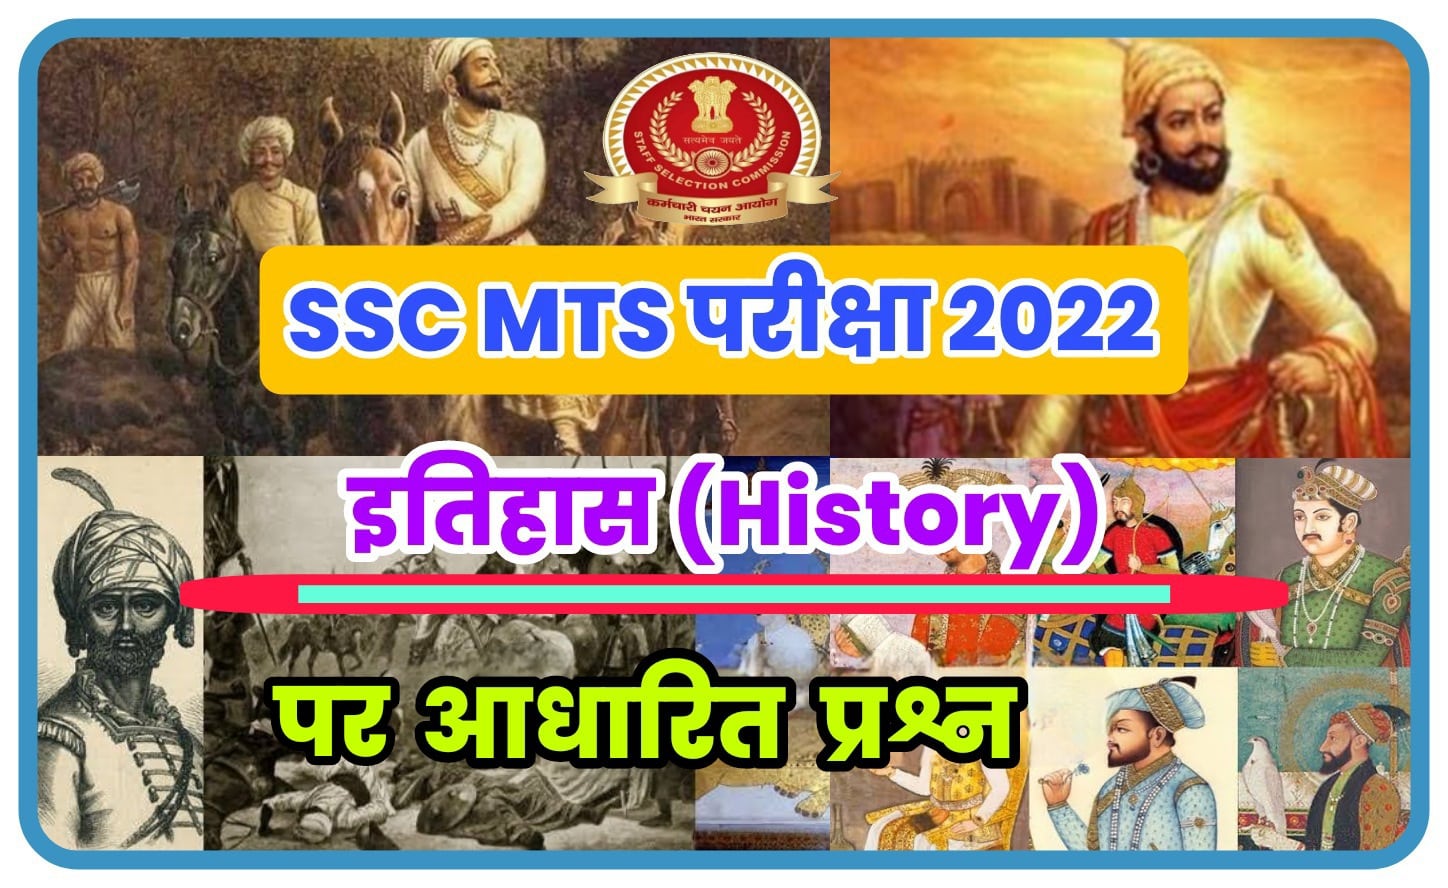 SSC MTS Havaldar Exam 2022 : इतिहास (History) पर आधारित बेहद महत्वपूर्ण प्रश्नों का अध्ययन अवश्य करें